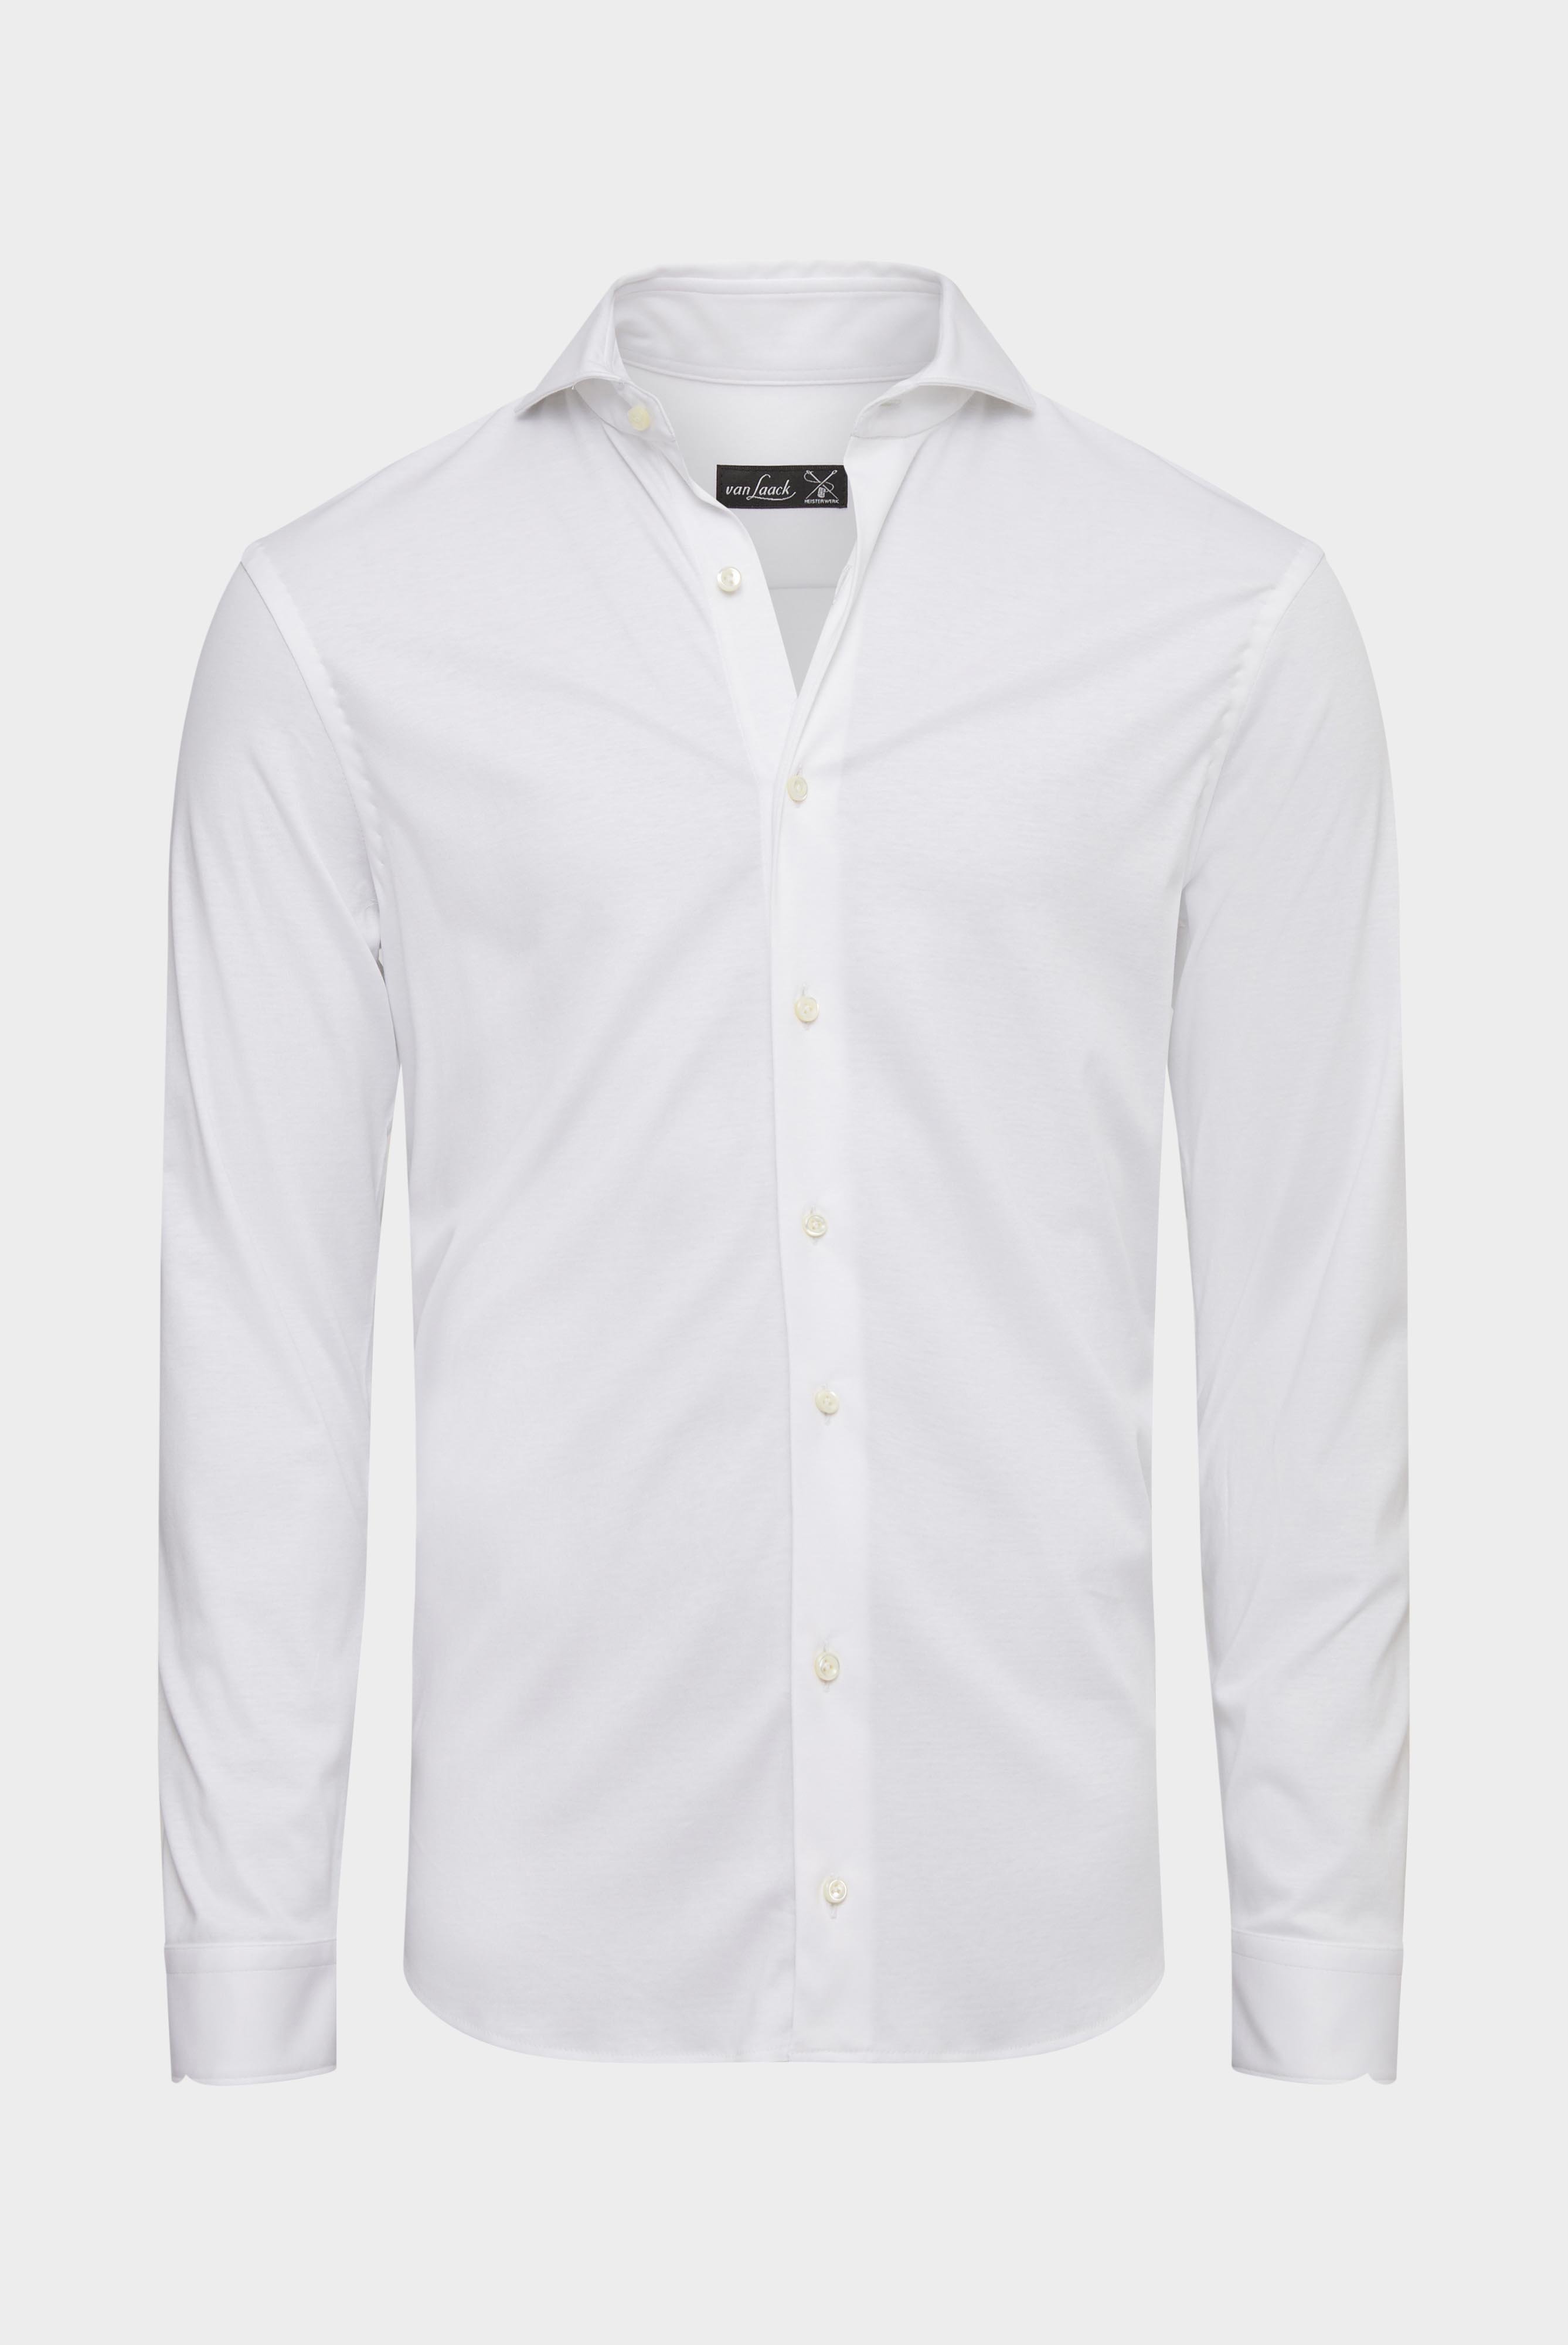 Jersey Hemden+Jersey Hemd aus Schweizer Baumwolle Slim Fit+20.1682.UC.180031.000.L